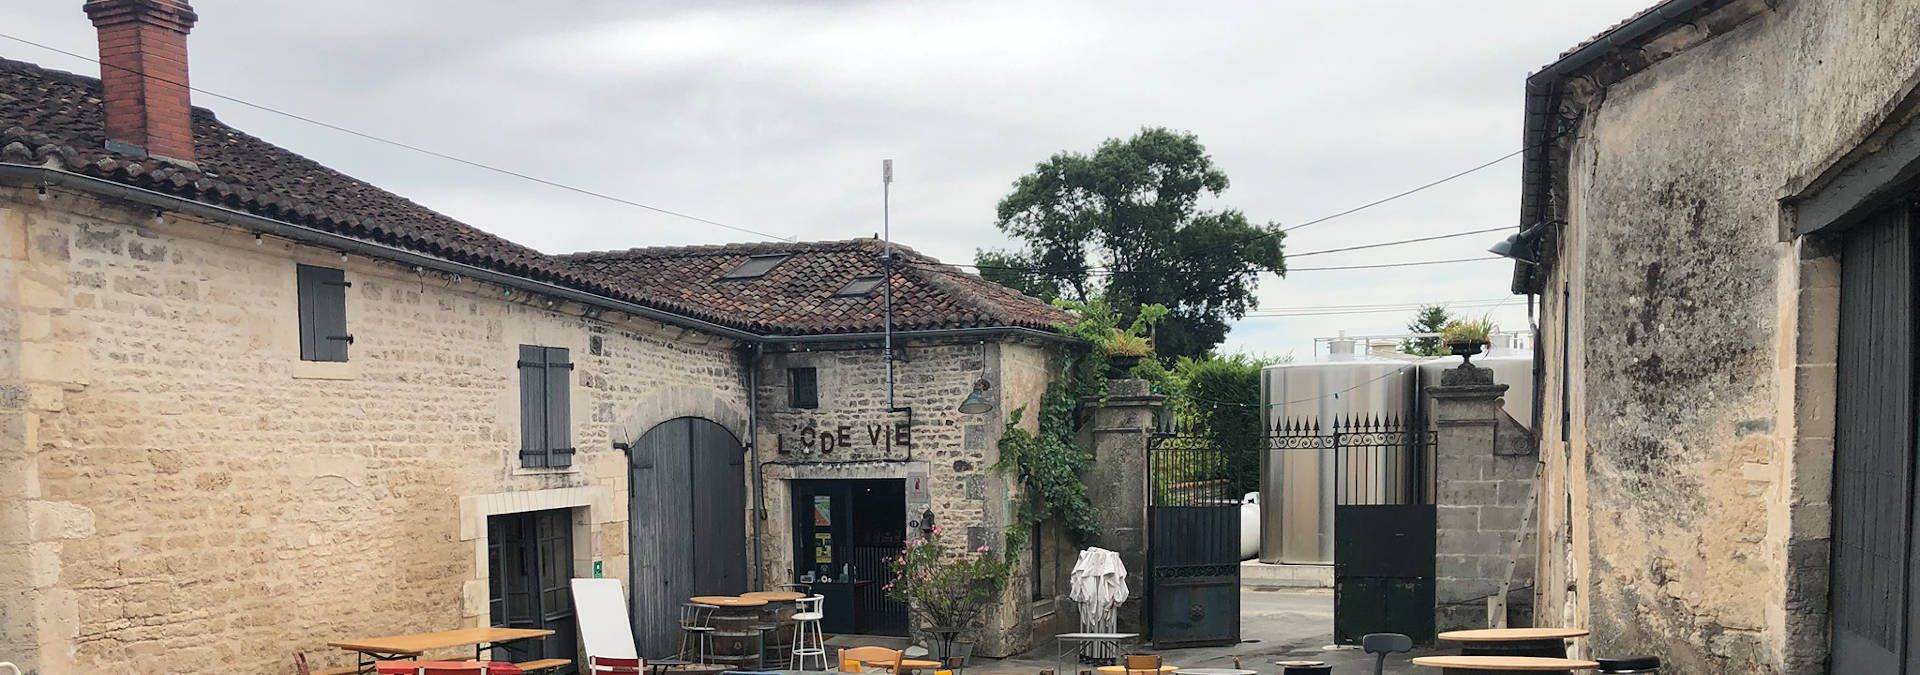 Vignoble Pelletant - Rue des Vignerons